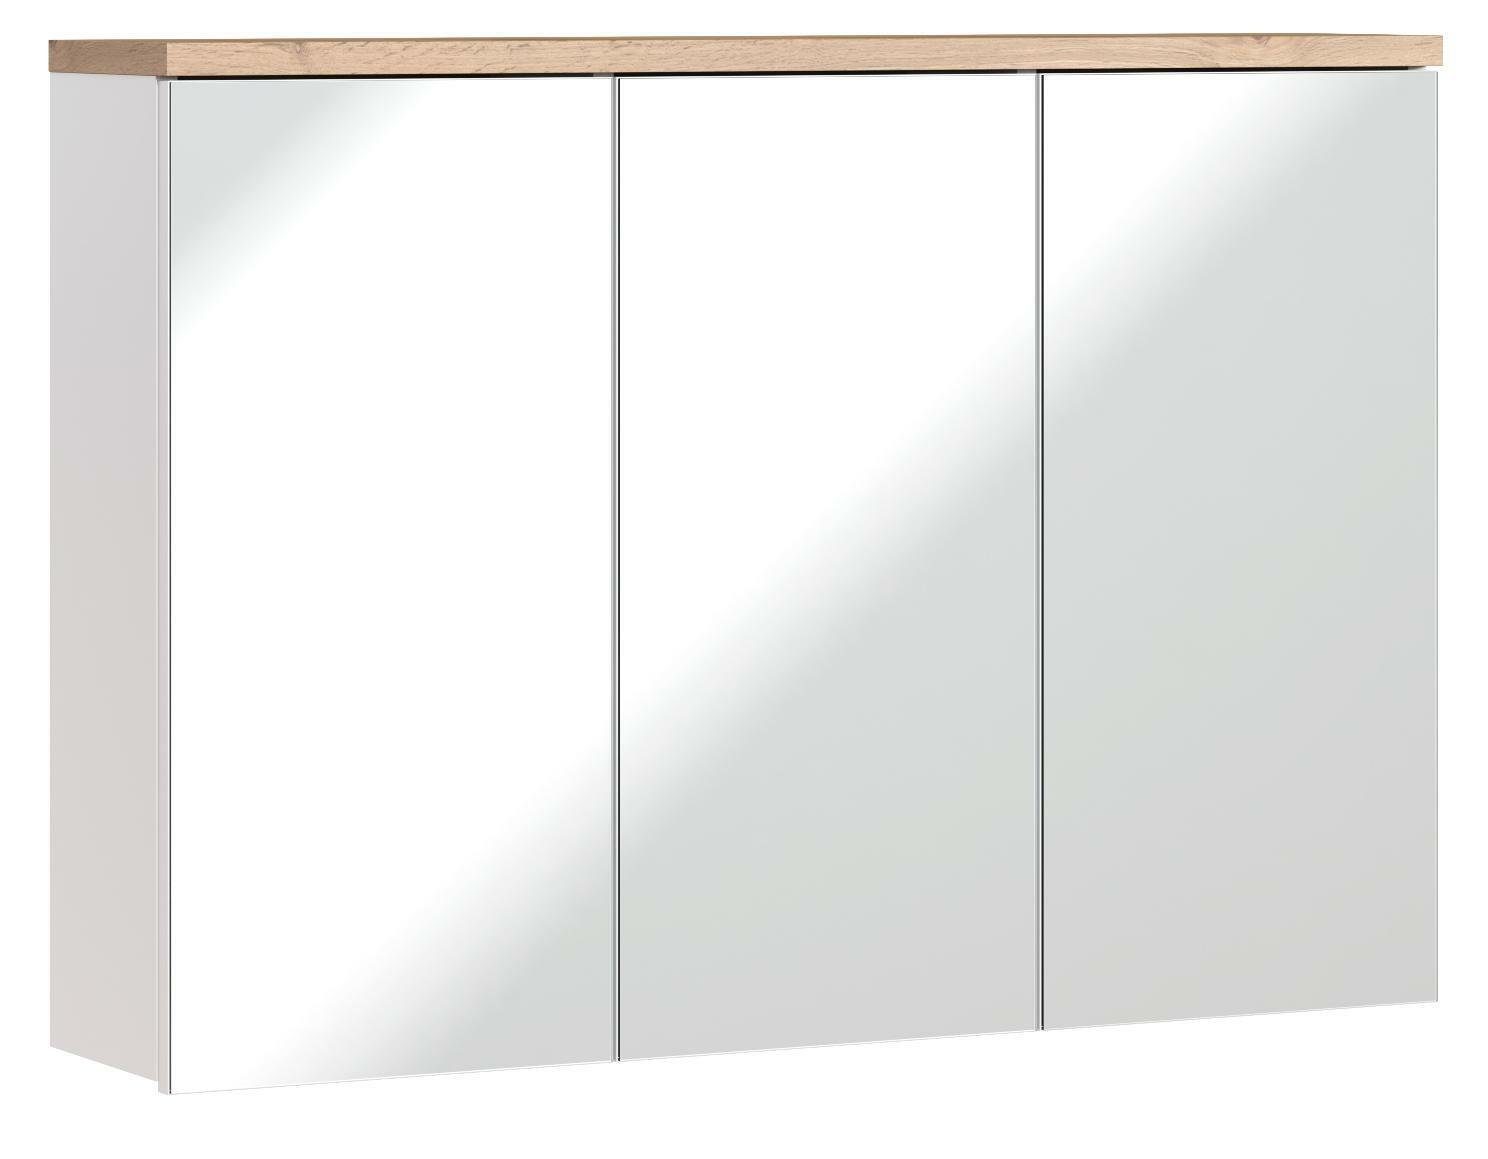 JVmoebel Badezimmerspiegelschrank Spiegelschrank Wandschrank Badezimmerschrank mit Spiegel 100 cm Bad Möbel Holz | Spiegelschränke